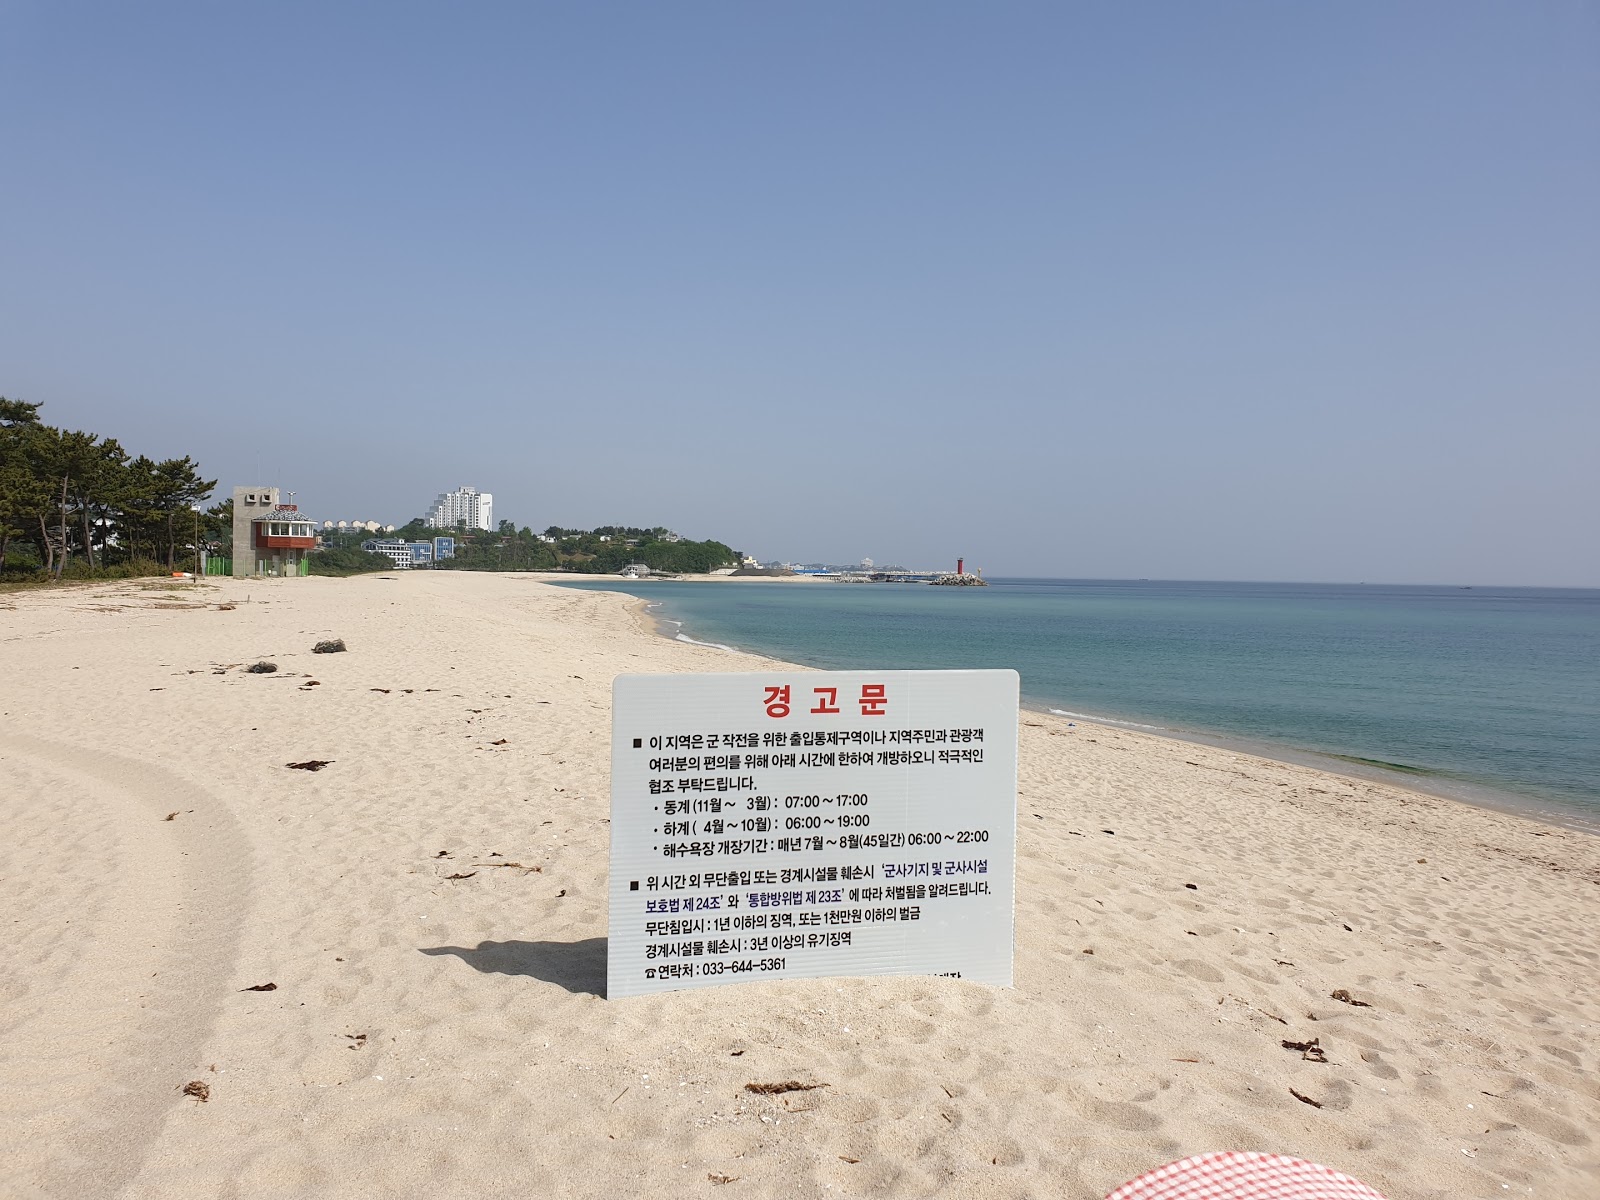 Zdjęcie Yeongok Beach z powierzchnią jasny piasek